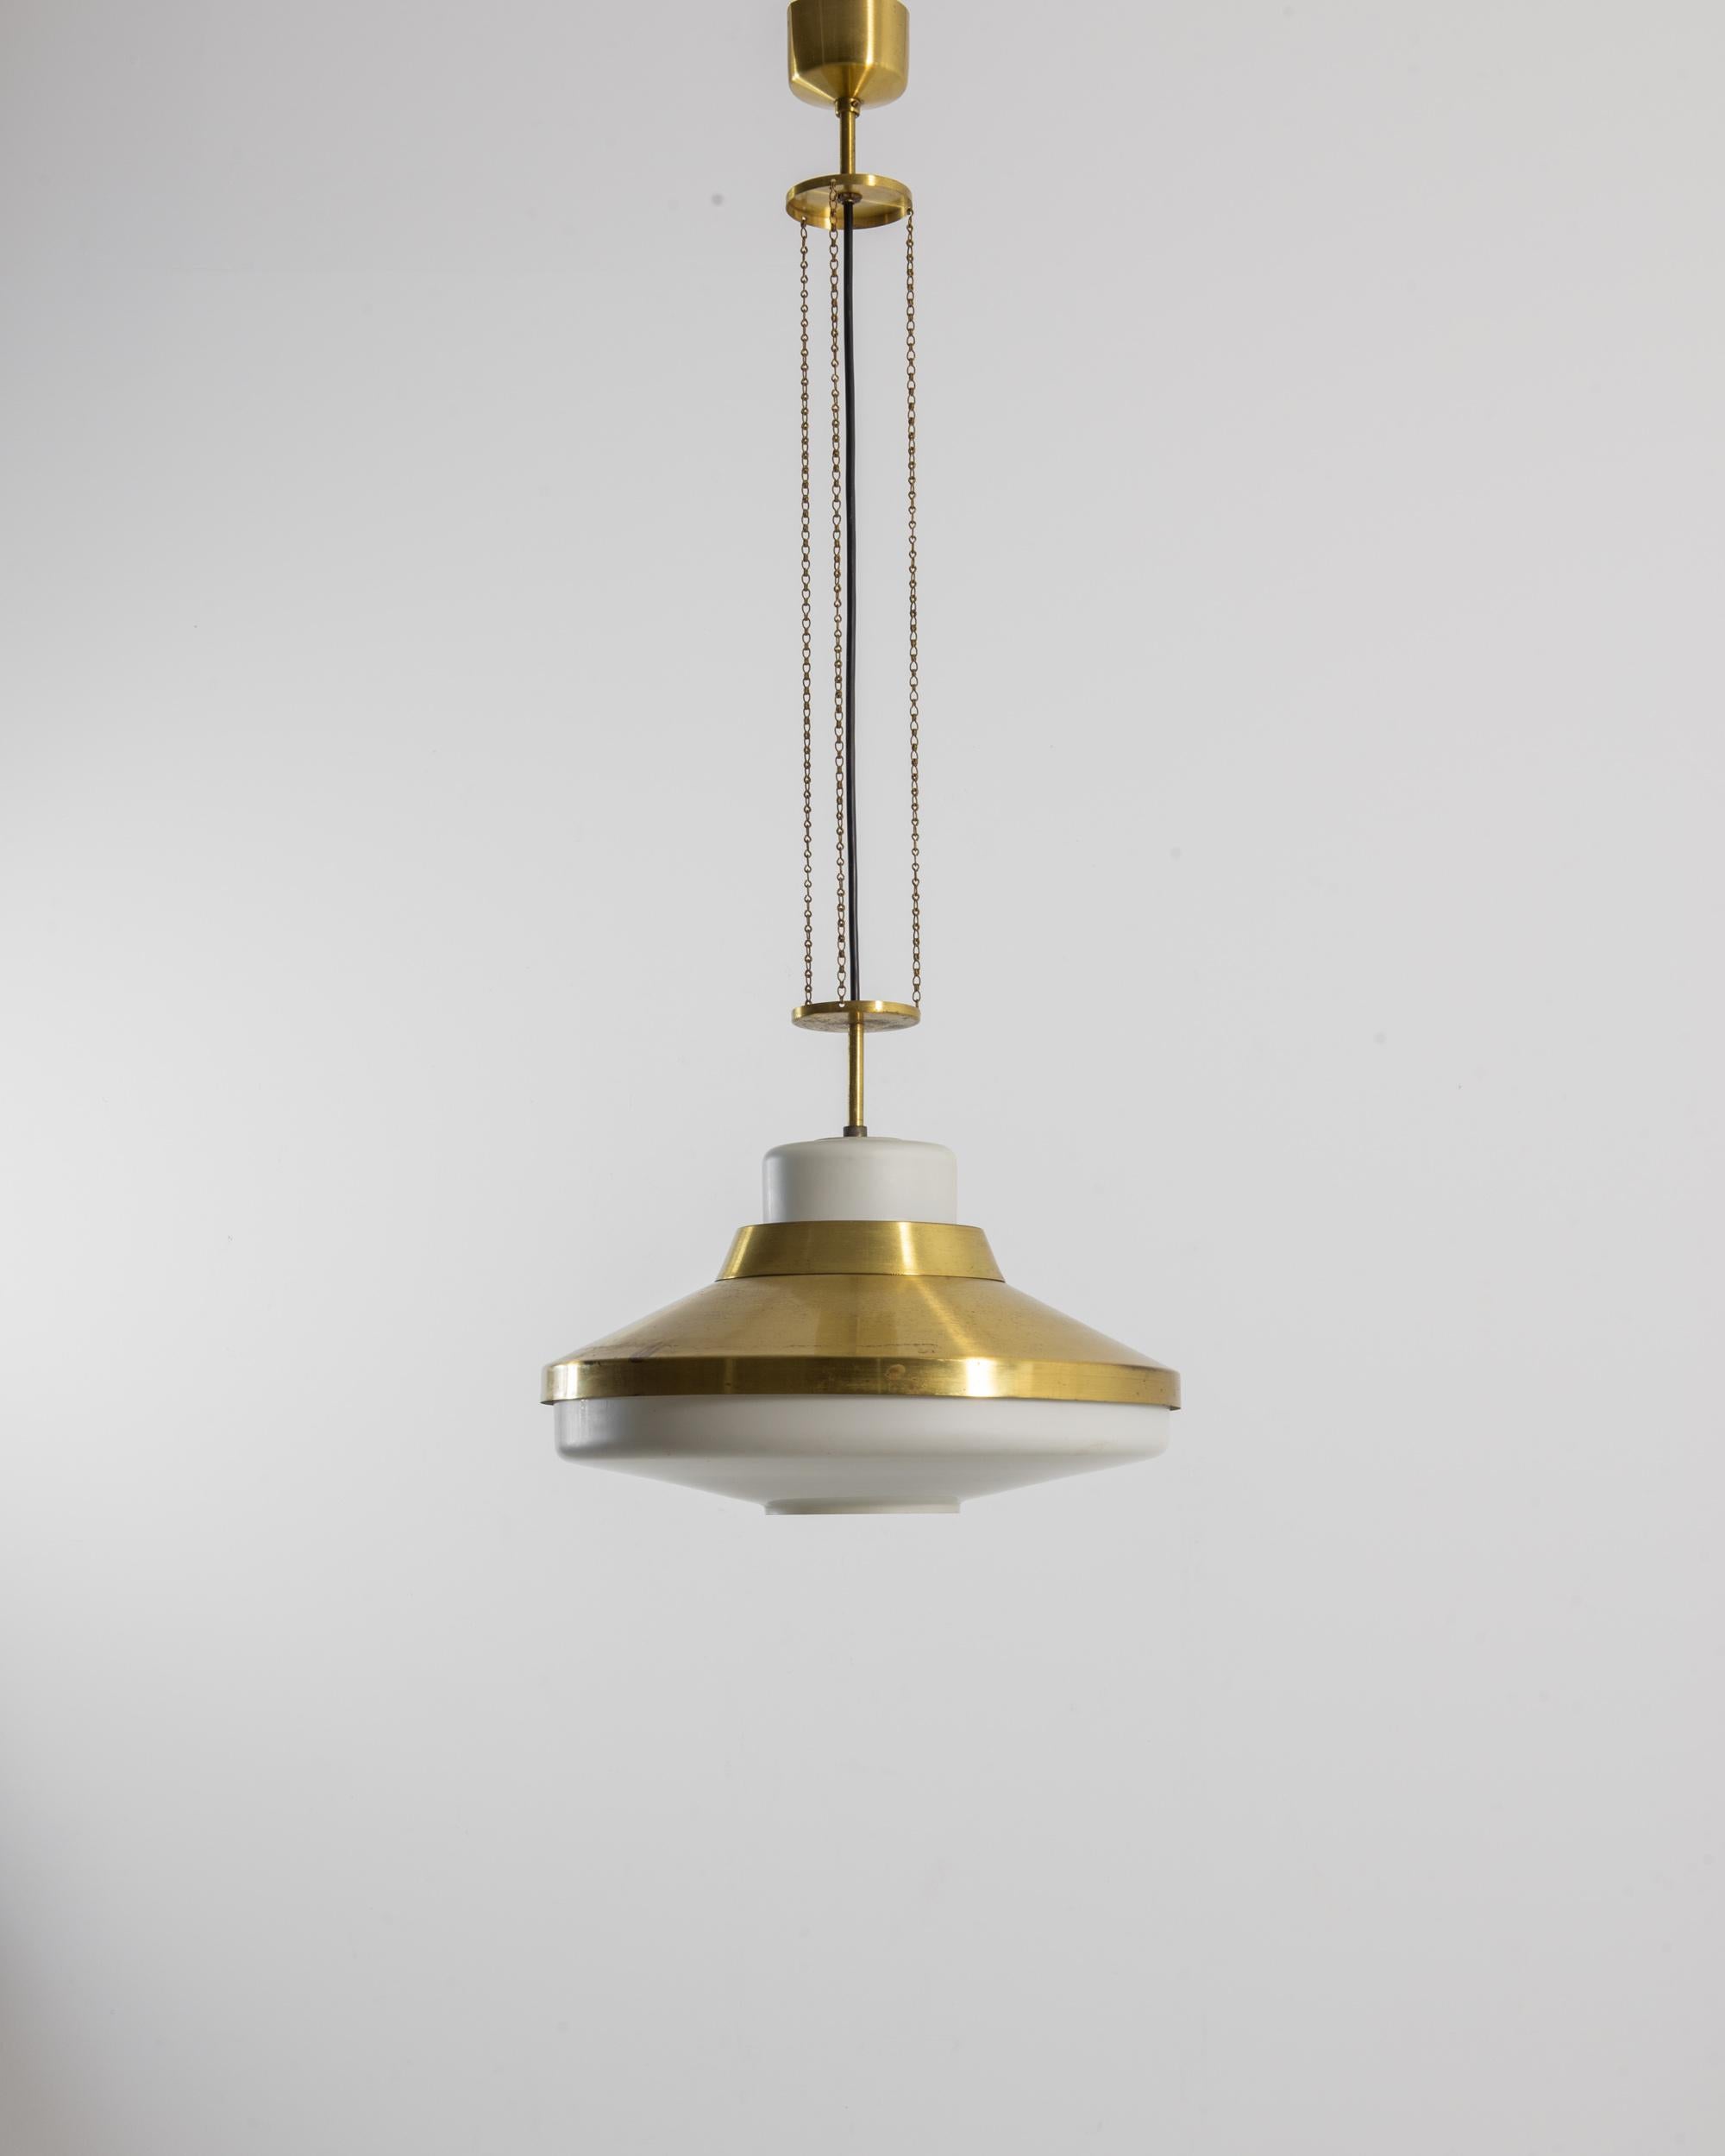 Le glamour Art Déco rencontre la simplicité industrielle dans cette lampe suspendue en laiton vintage. Fabriqué en Tchécoslovaquie dans les années 1970, le culot large et profilé de la lampe est suspendu à un agencement élancé de disques et de